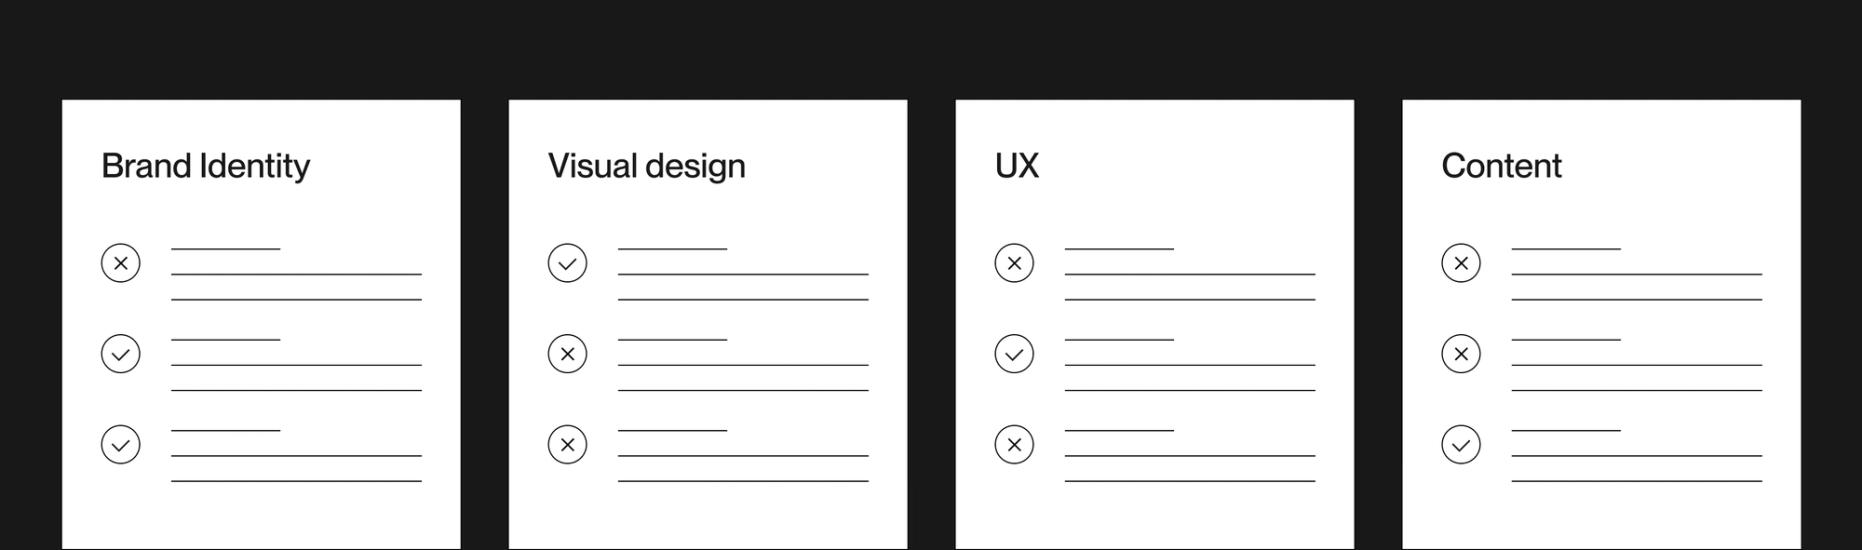 Design audit items: brand identity, visual design, UX, content